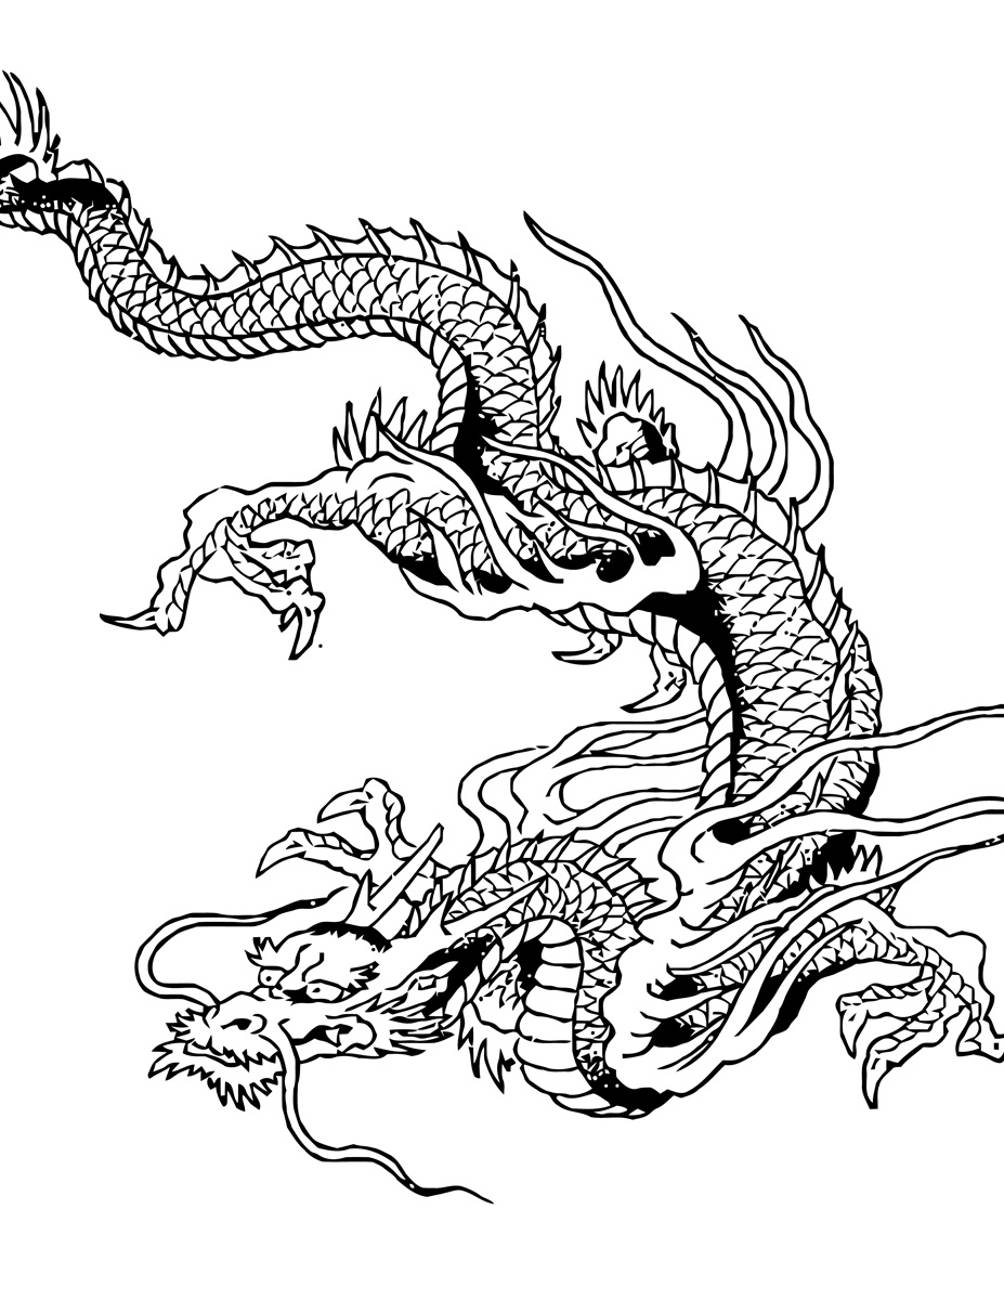 Китайский дракон эскиз горизонтальный